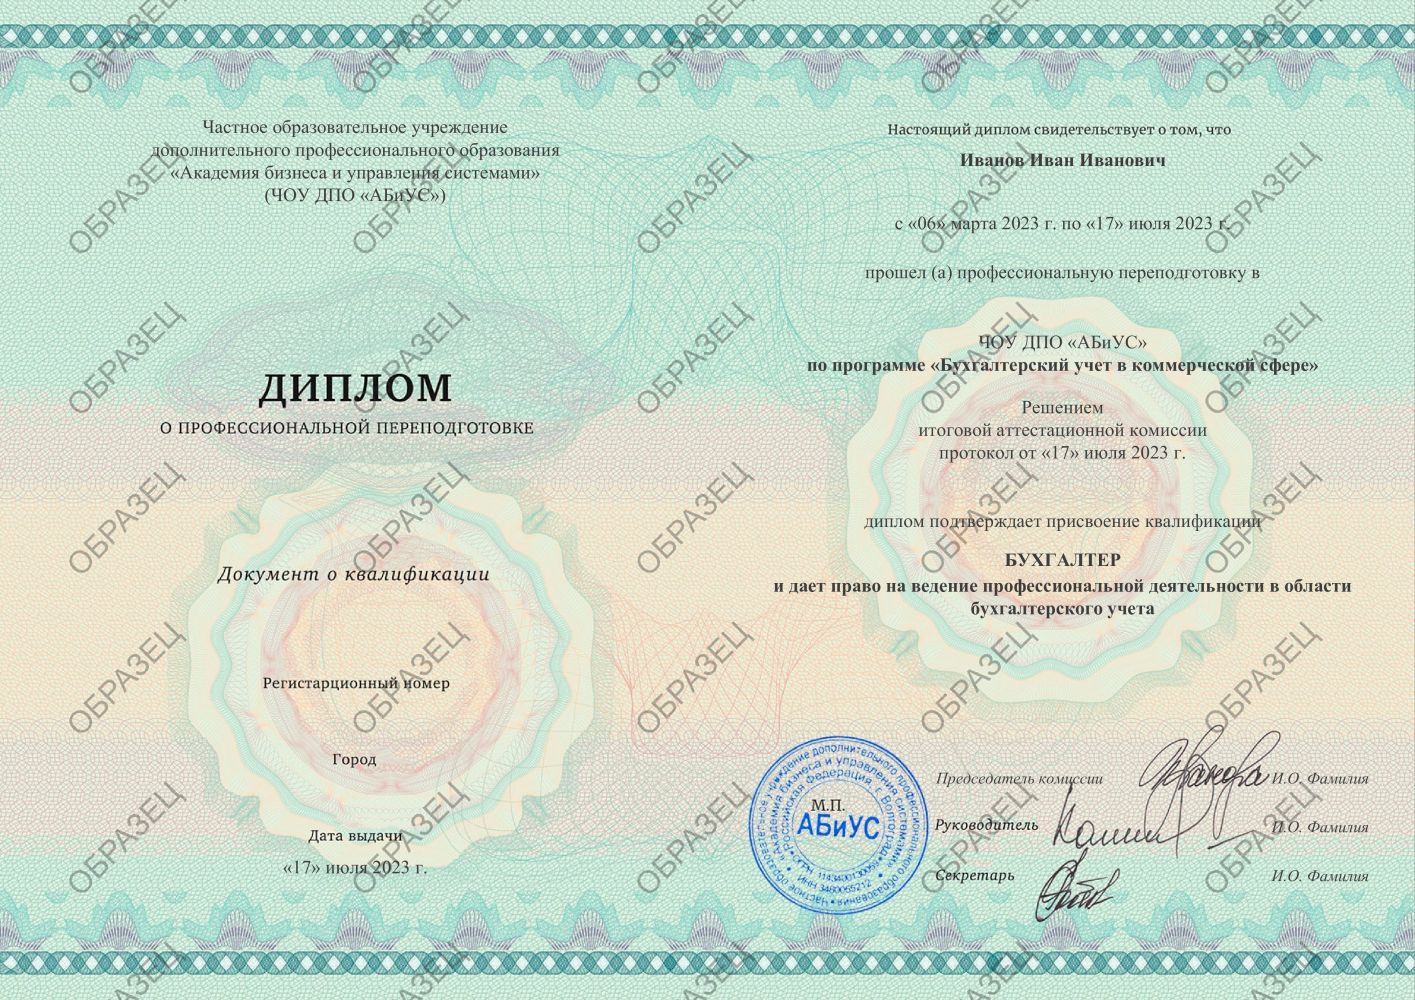 Диплом Бухгалтерский учет в коммерческой сфере 510 часов 16938 руб.